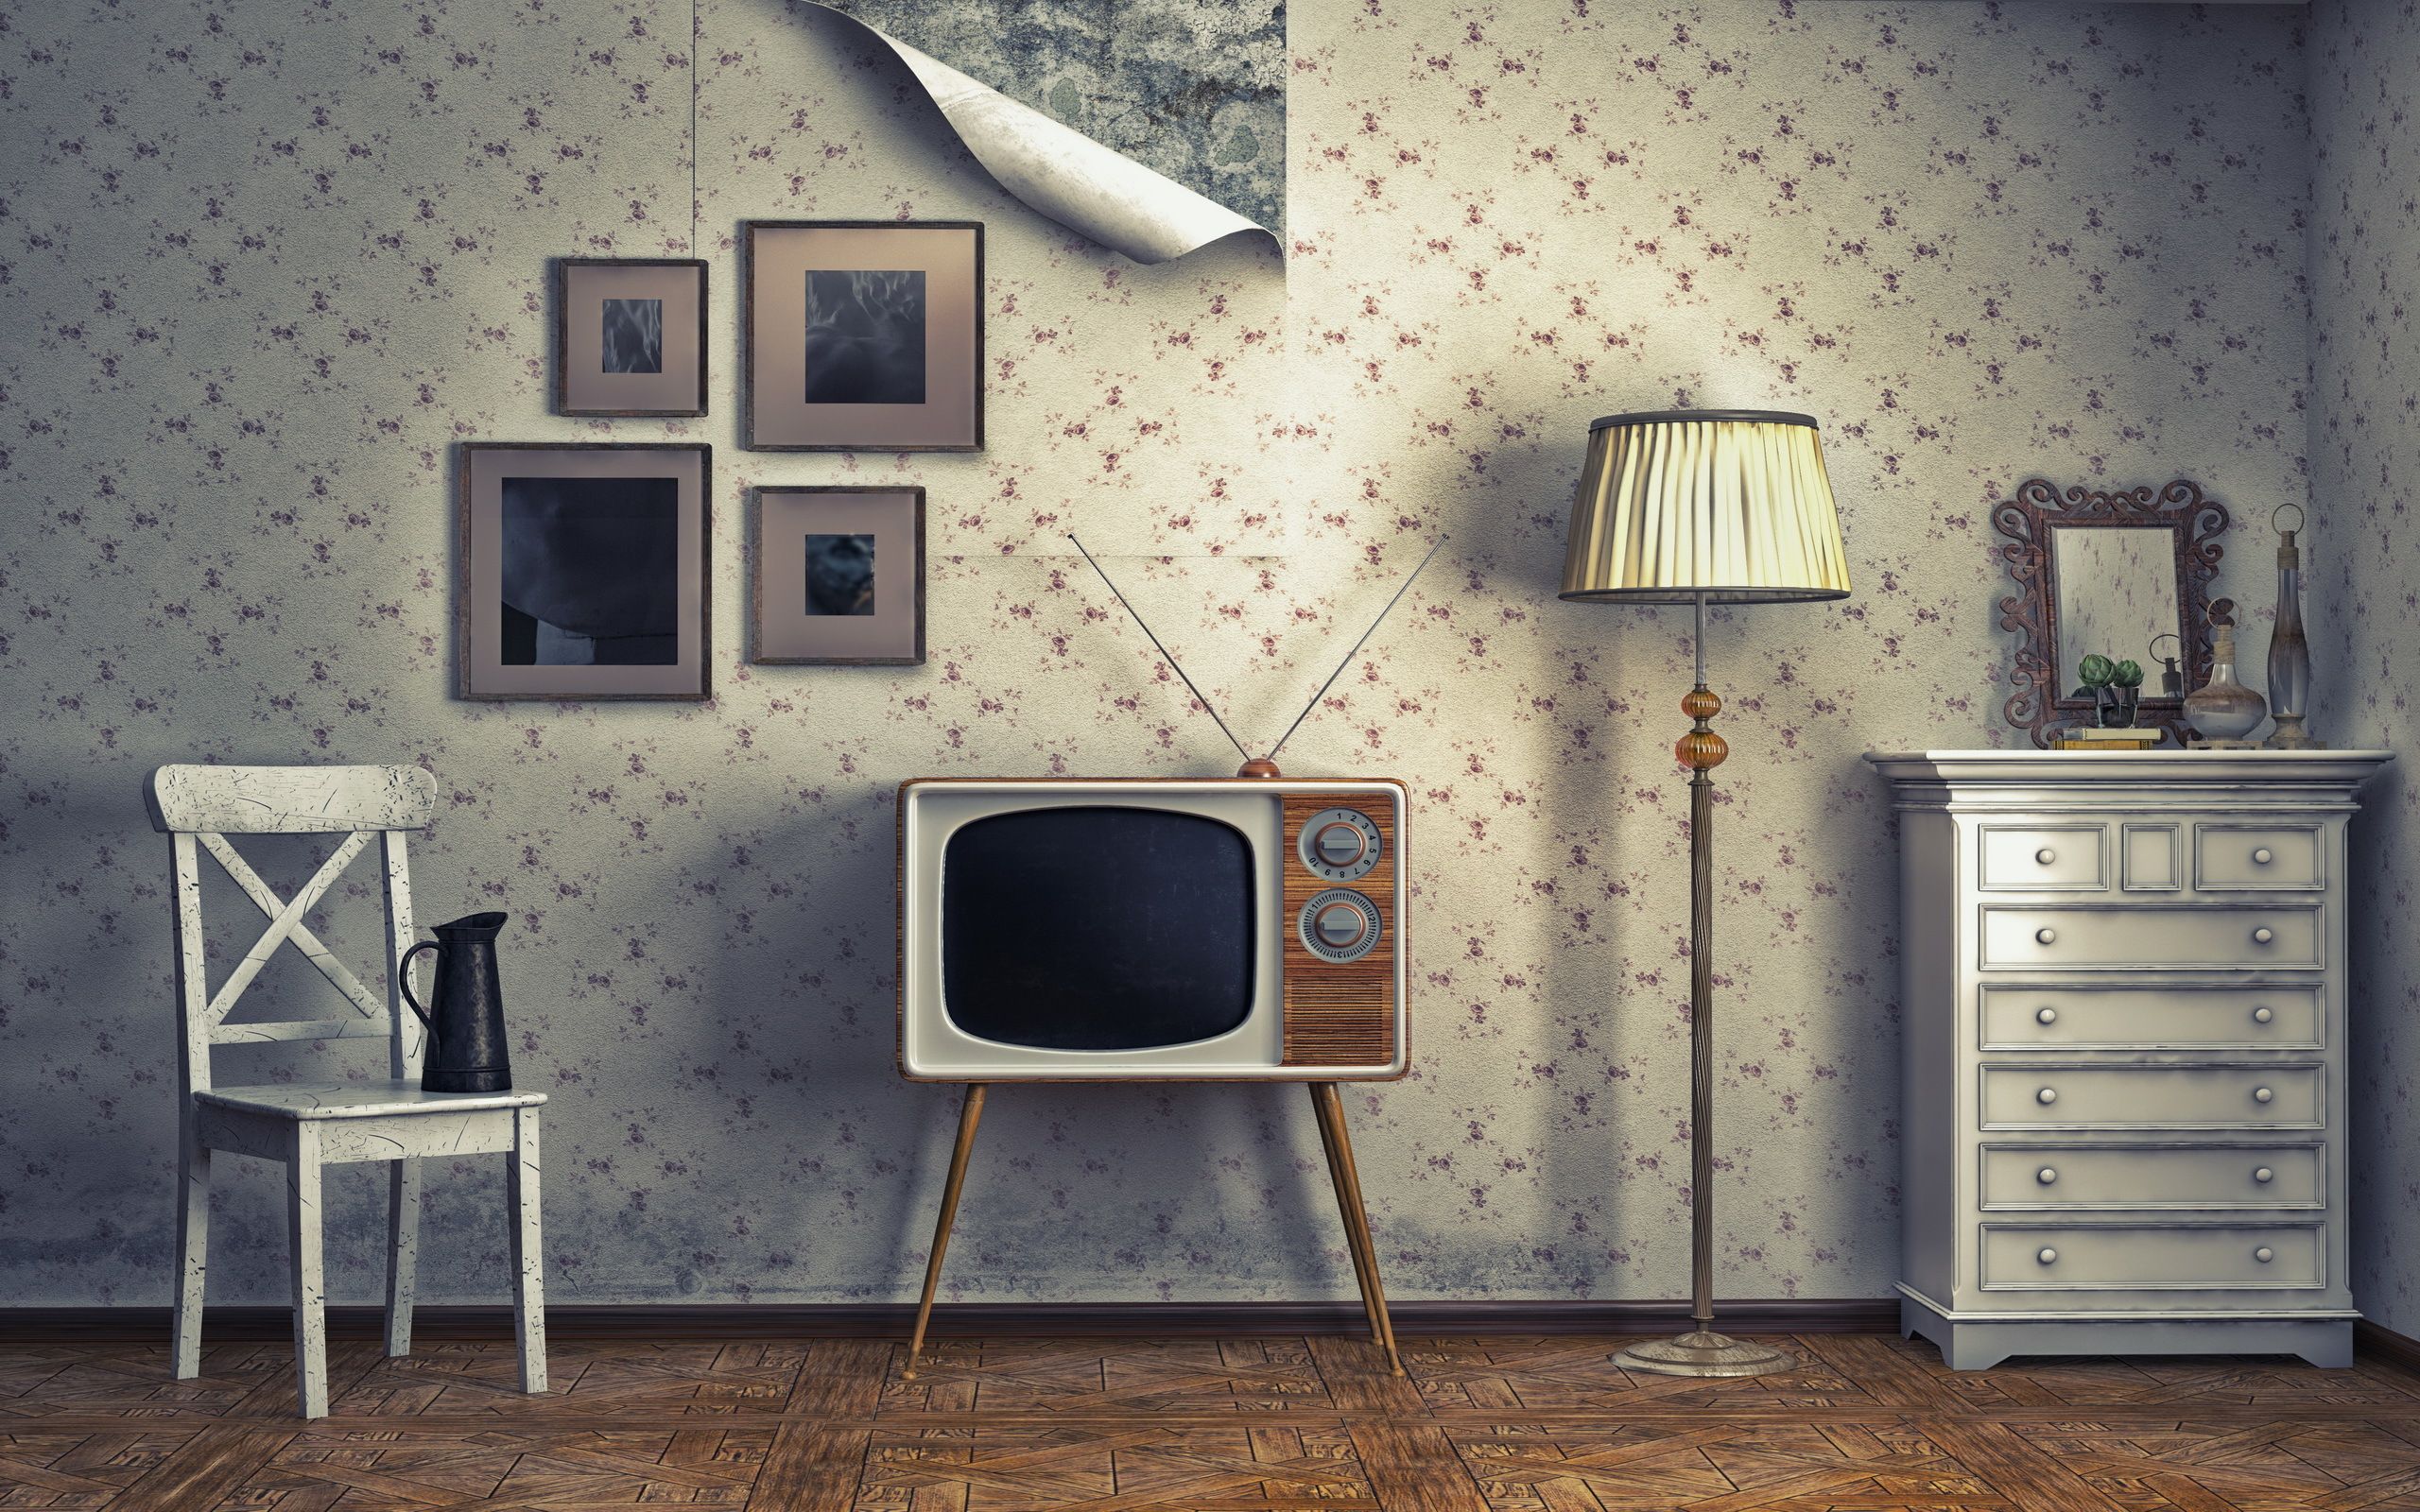 Vintage Tv wallpaper. Vintage Tv